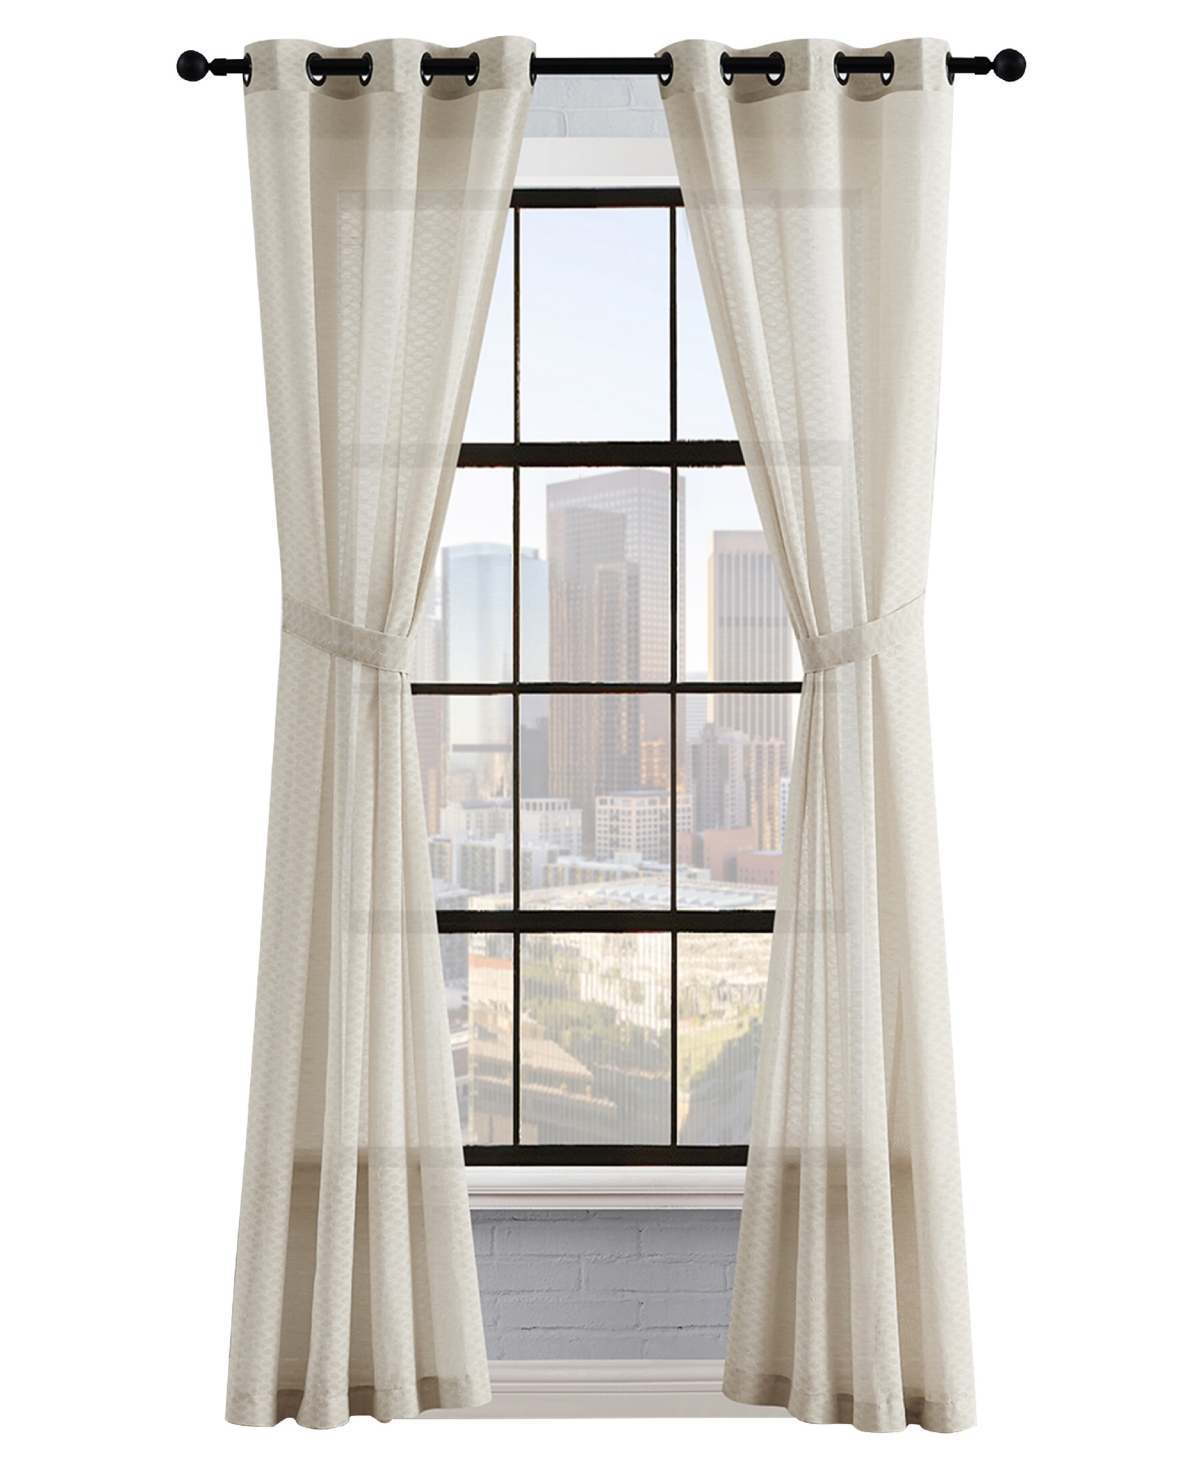 Lucky Brand Larkin Textured Light Filtering Grommet Window Curtain Panel Pair With Tiebacks, 38" X 84" In Linen Beige